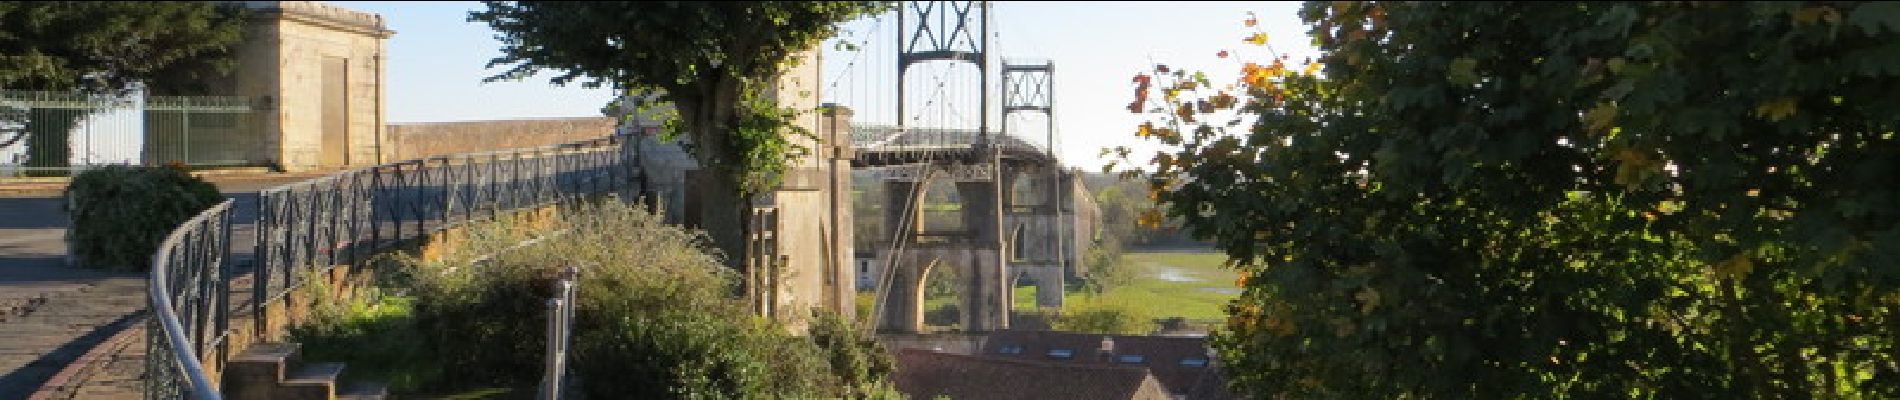 Randonnée V.T.T. Rochefort - Les ponts rochefortais - Rochefort - Photo